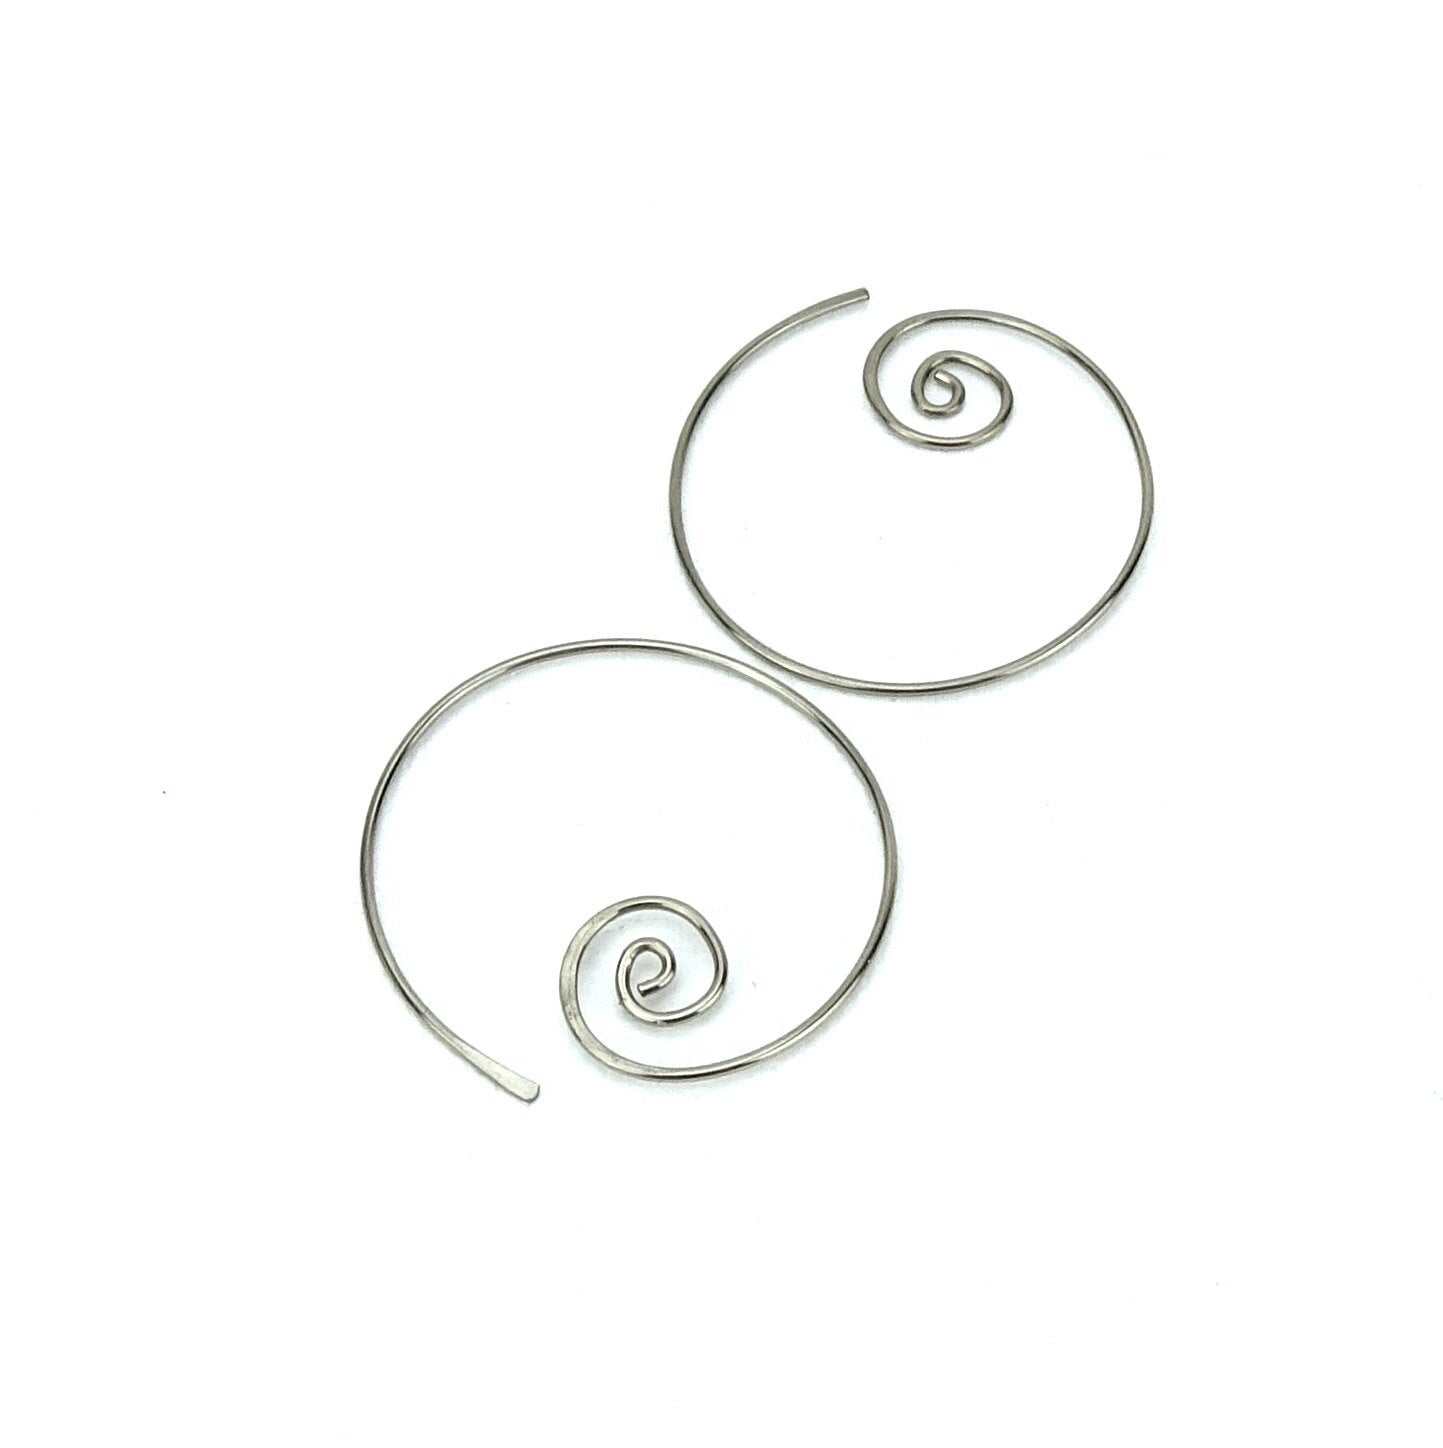 Niobium Earrings Spiral Hoops, Silver Color Niobium Spiraling Hoop Earrings for Sensitive Ears, Hypoallergenic Nickel Free Jewellery